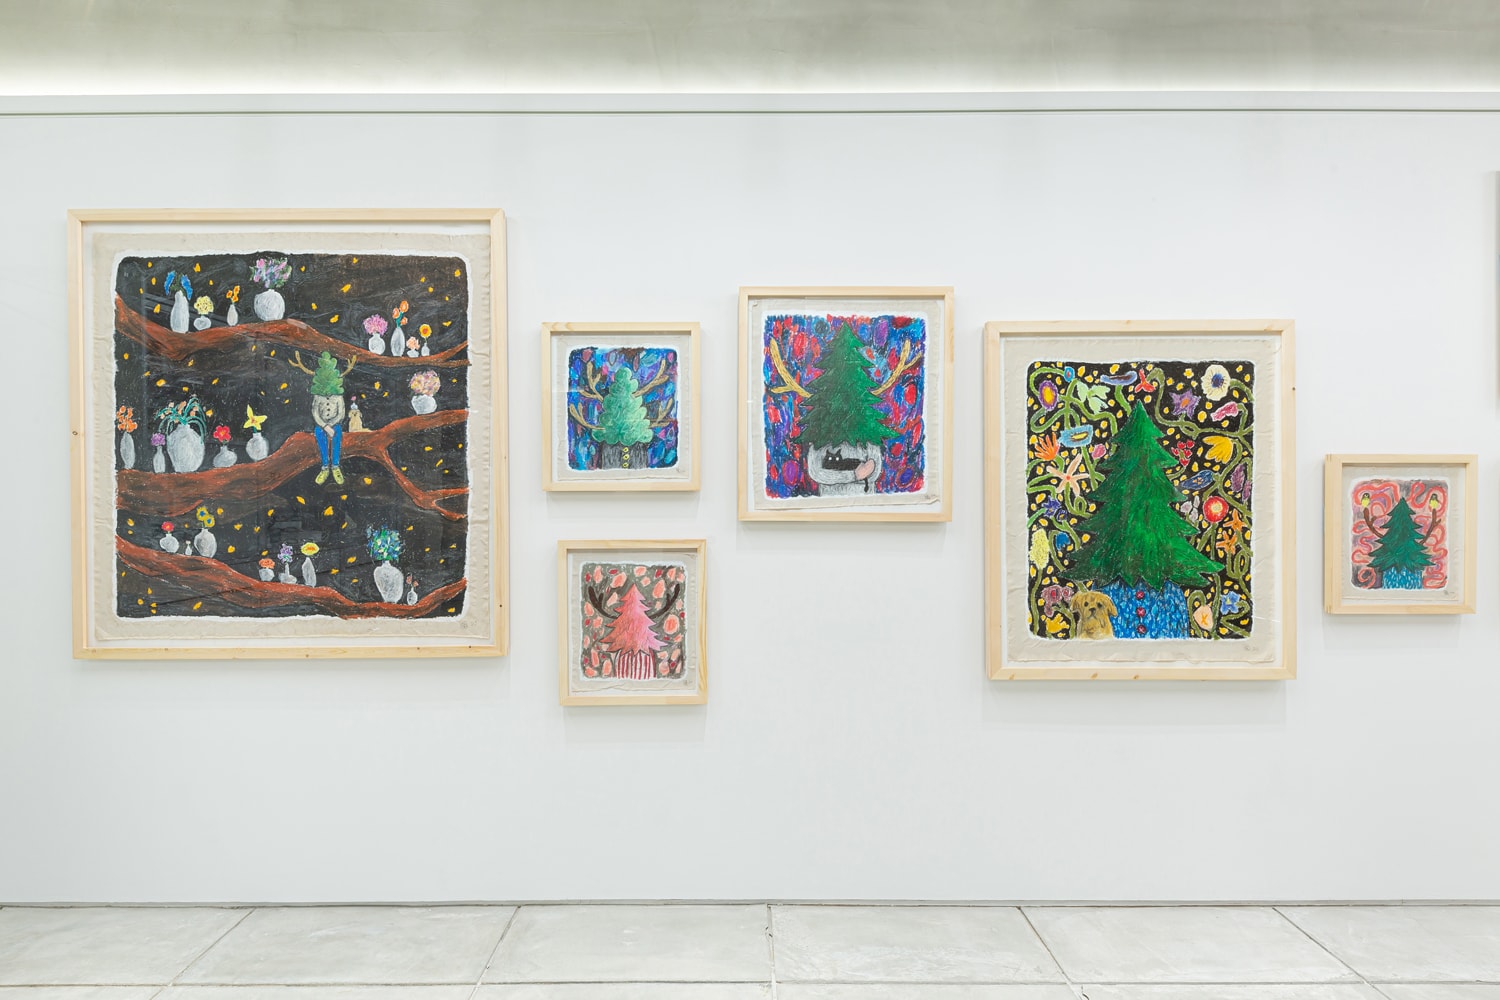 yuichi hirako growth rings warehouse gallery hong kong exhibition paintings artworks